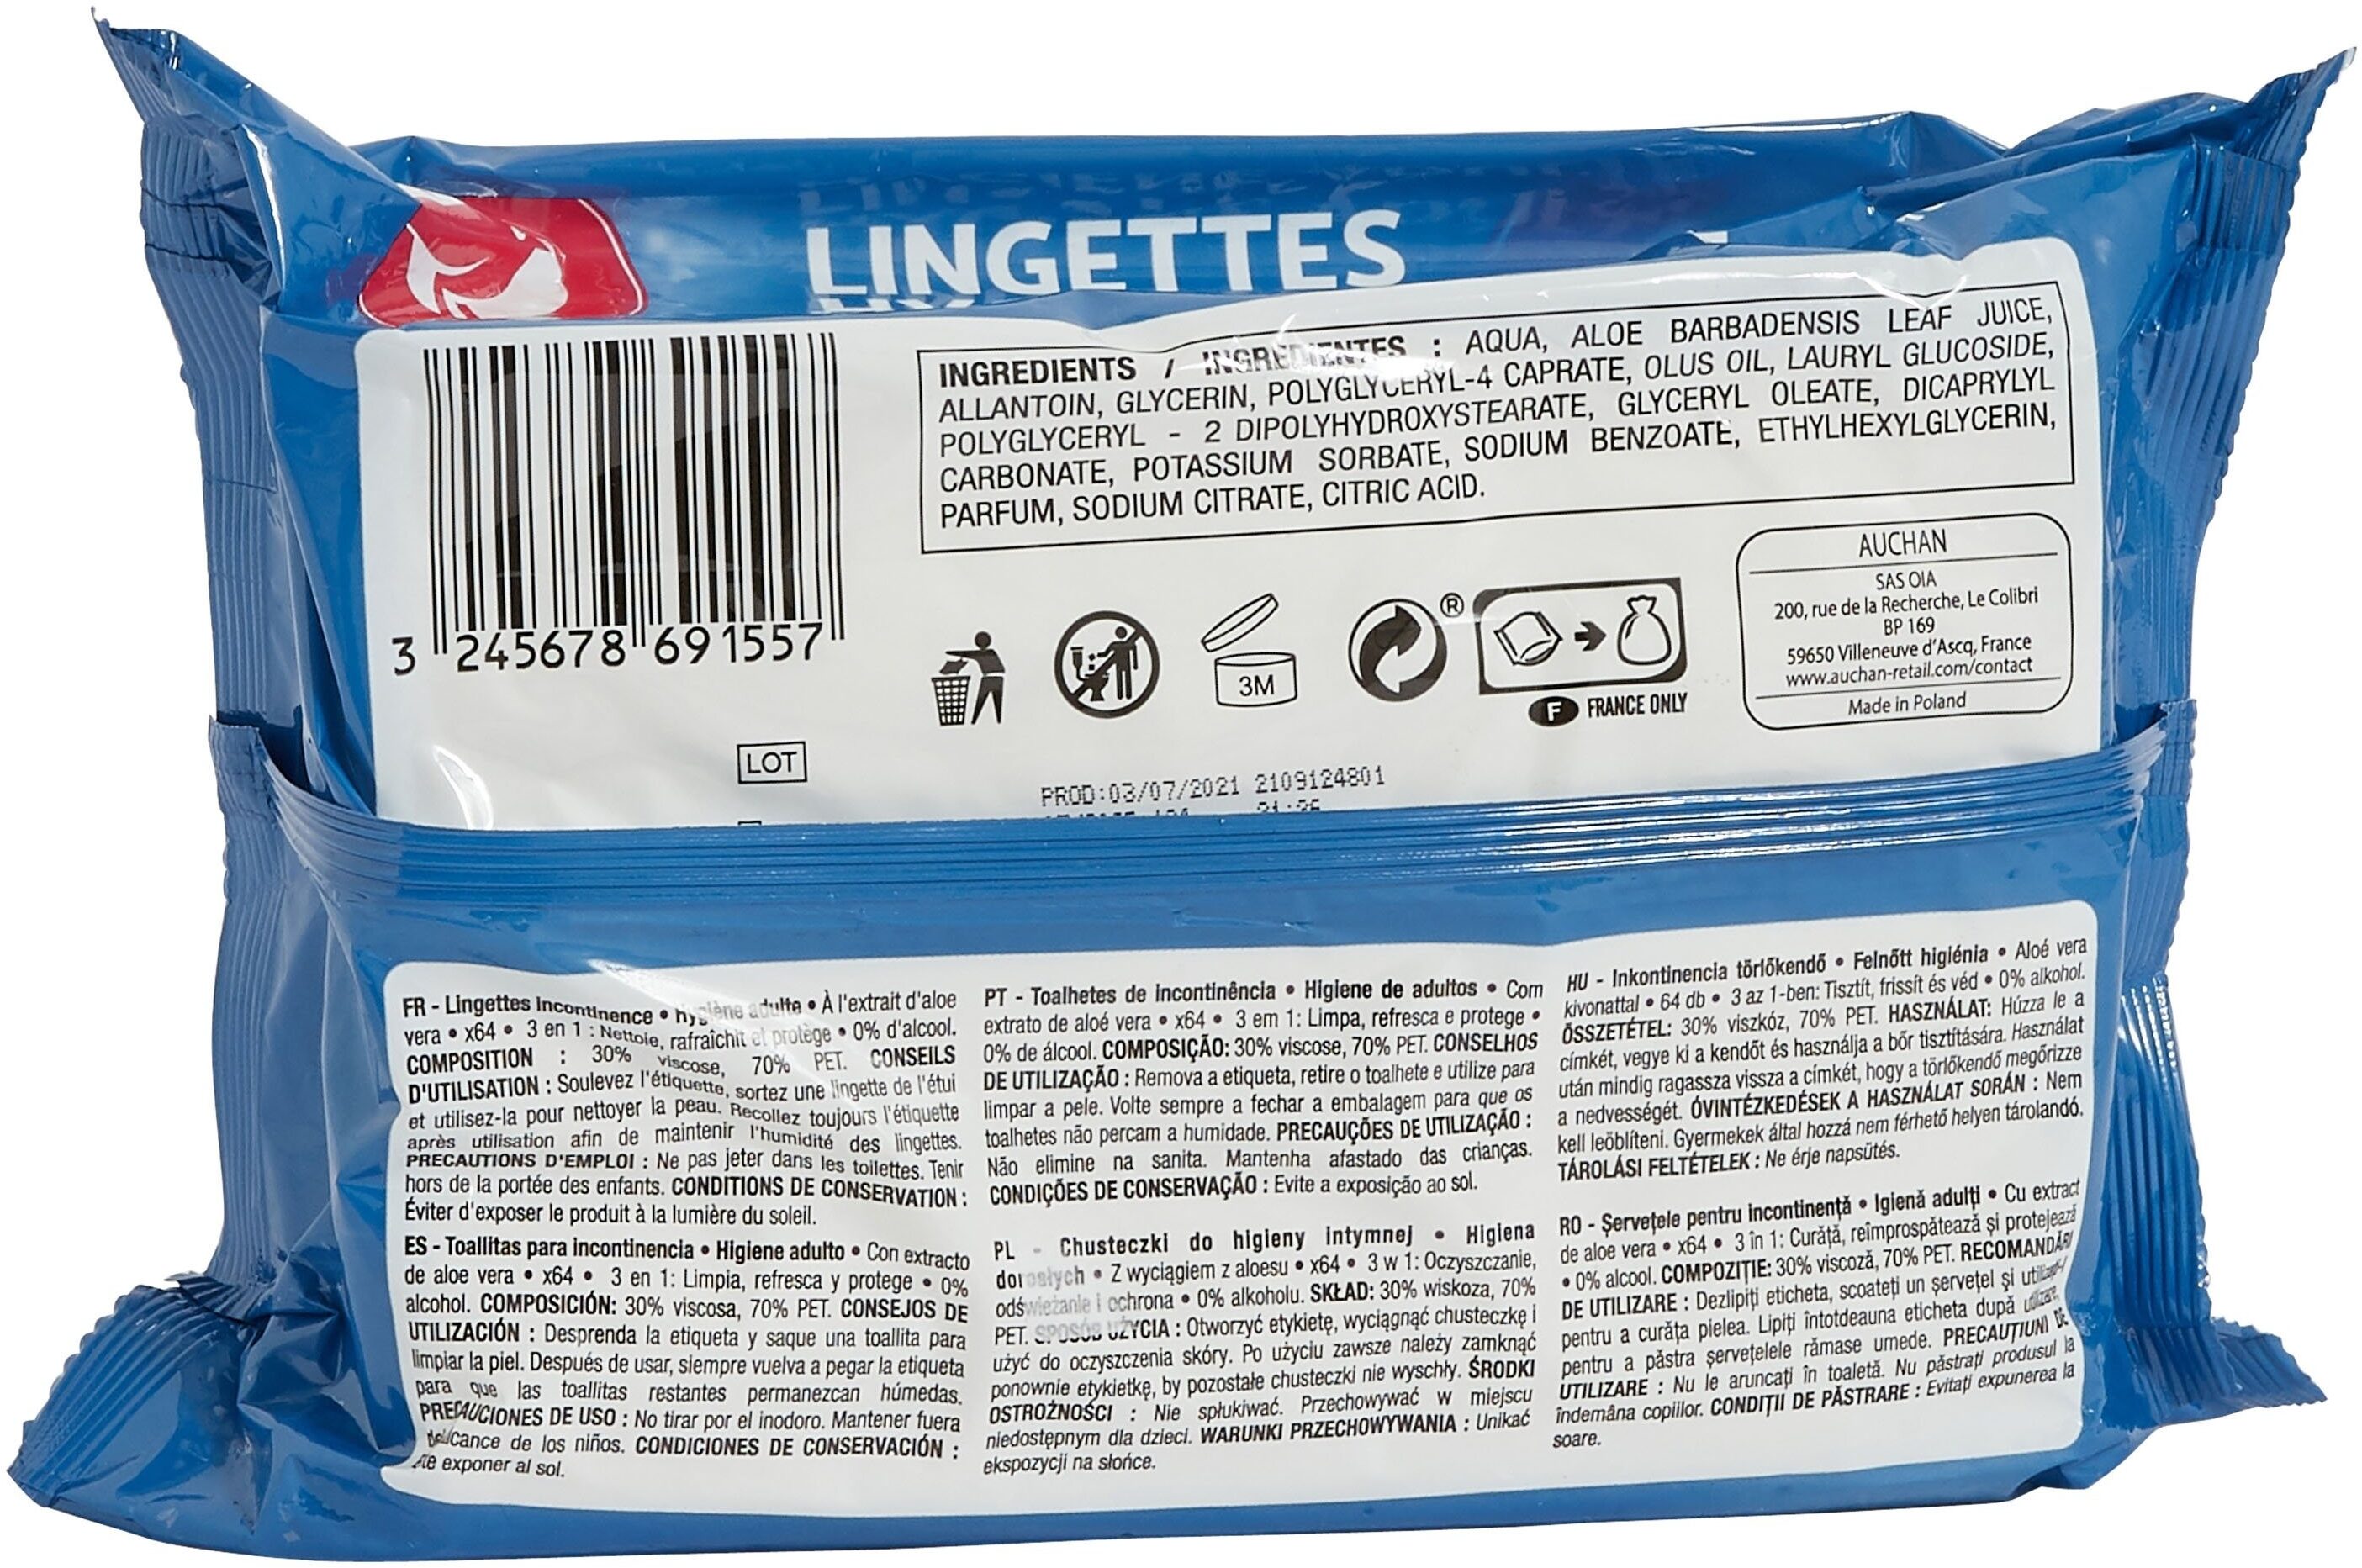 Lingettes hygiène adulte 3 en 1 - Auchan - 64 pièces